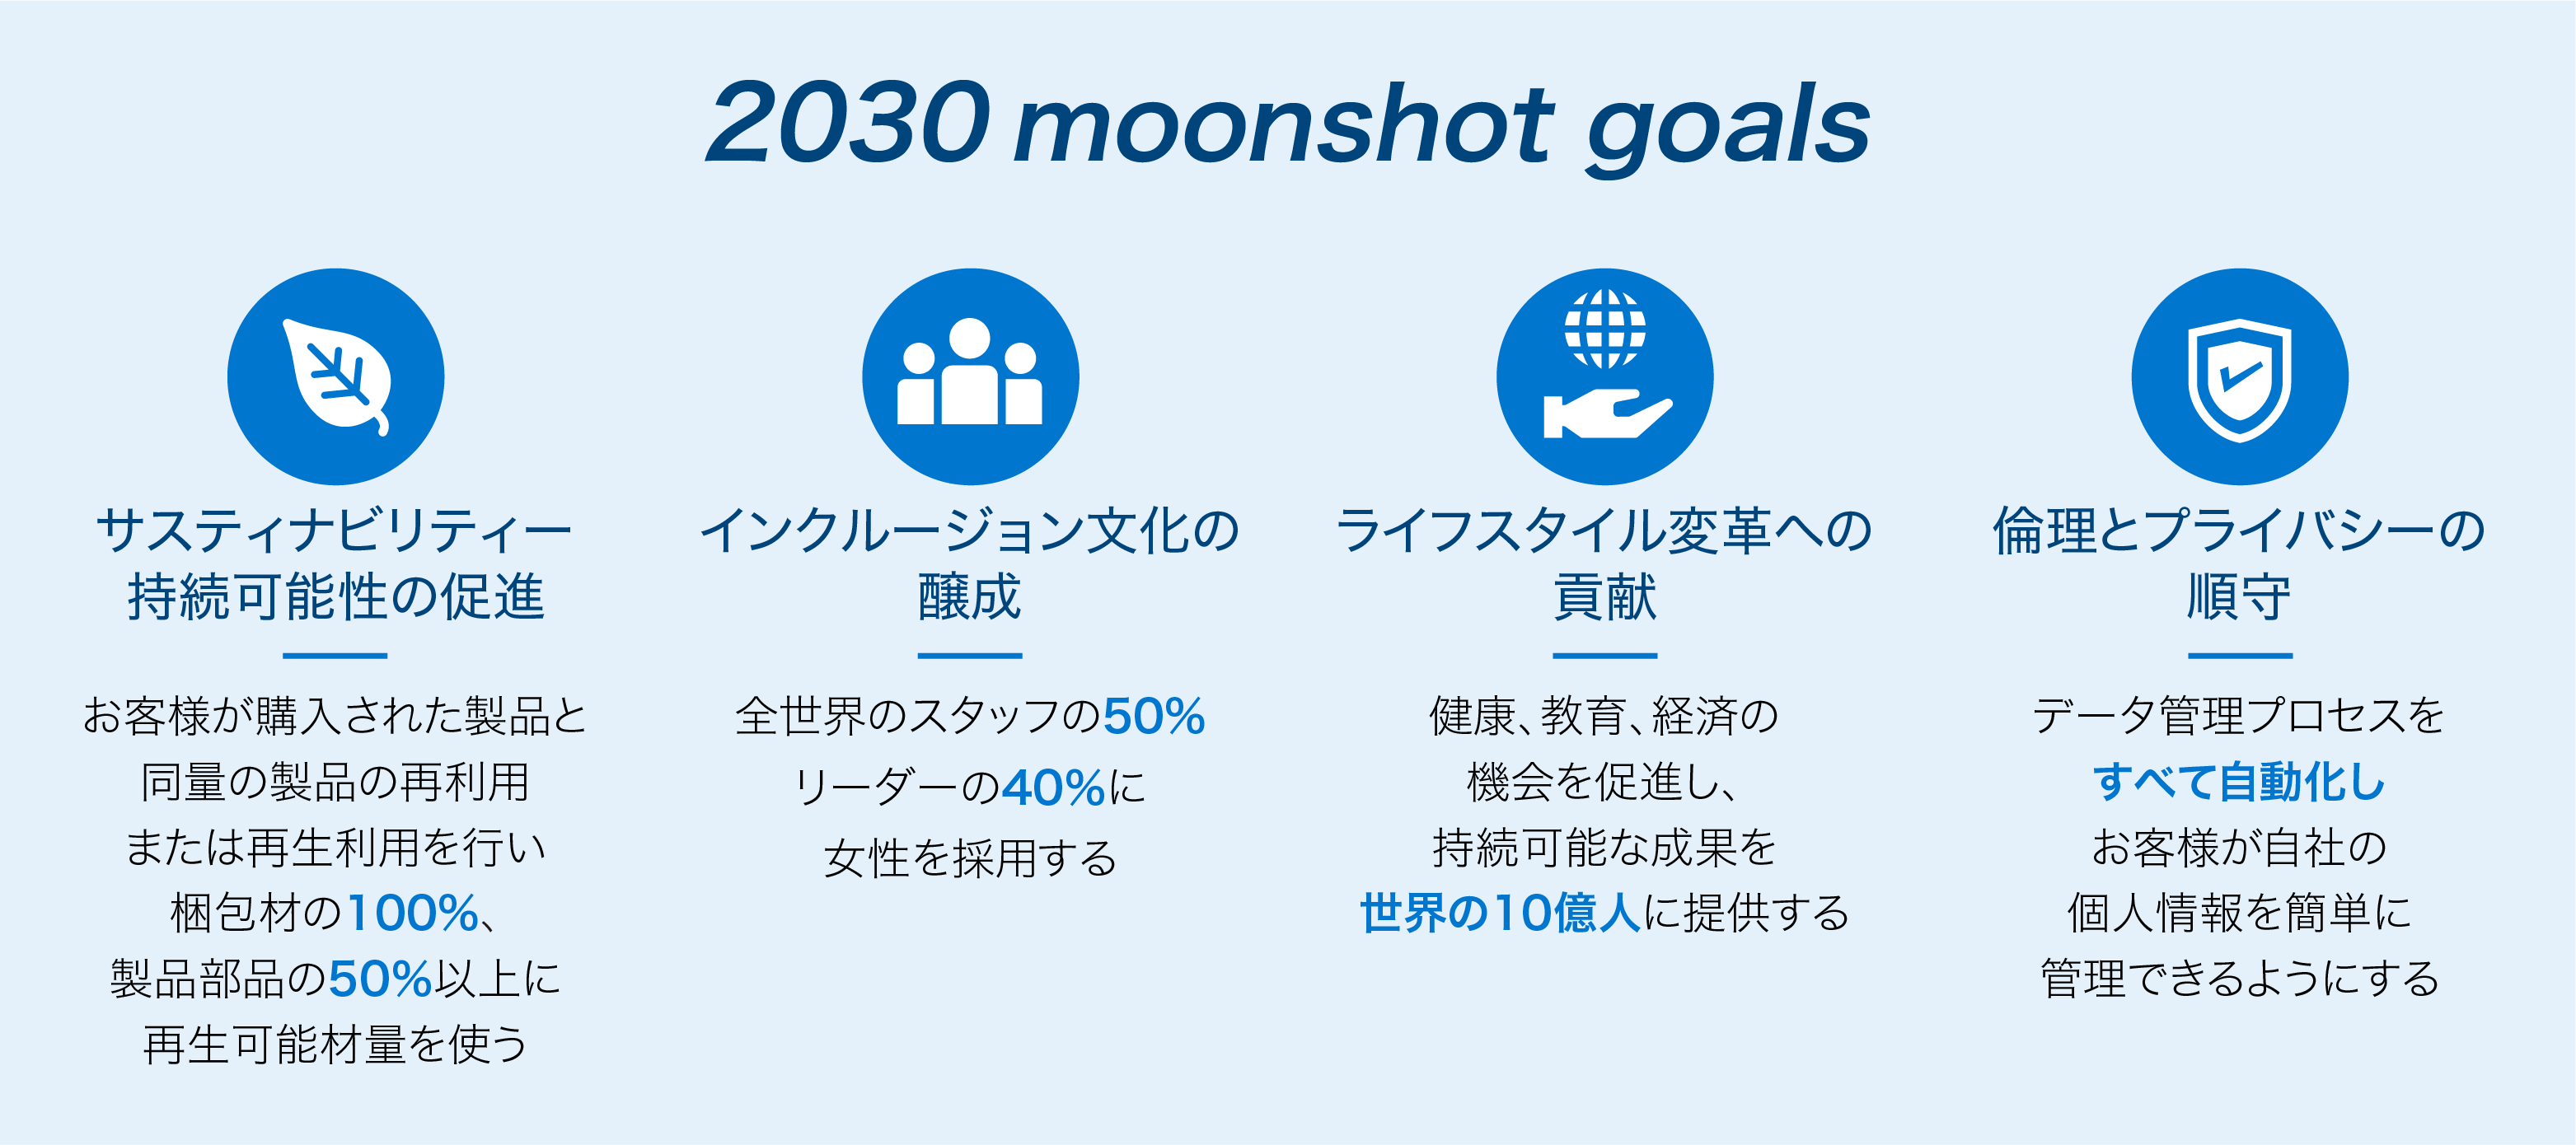 図１：デル・テクノロジーズのSDGs目標「2030 Moonshot Goals」